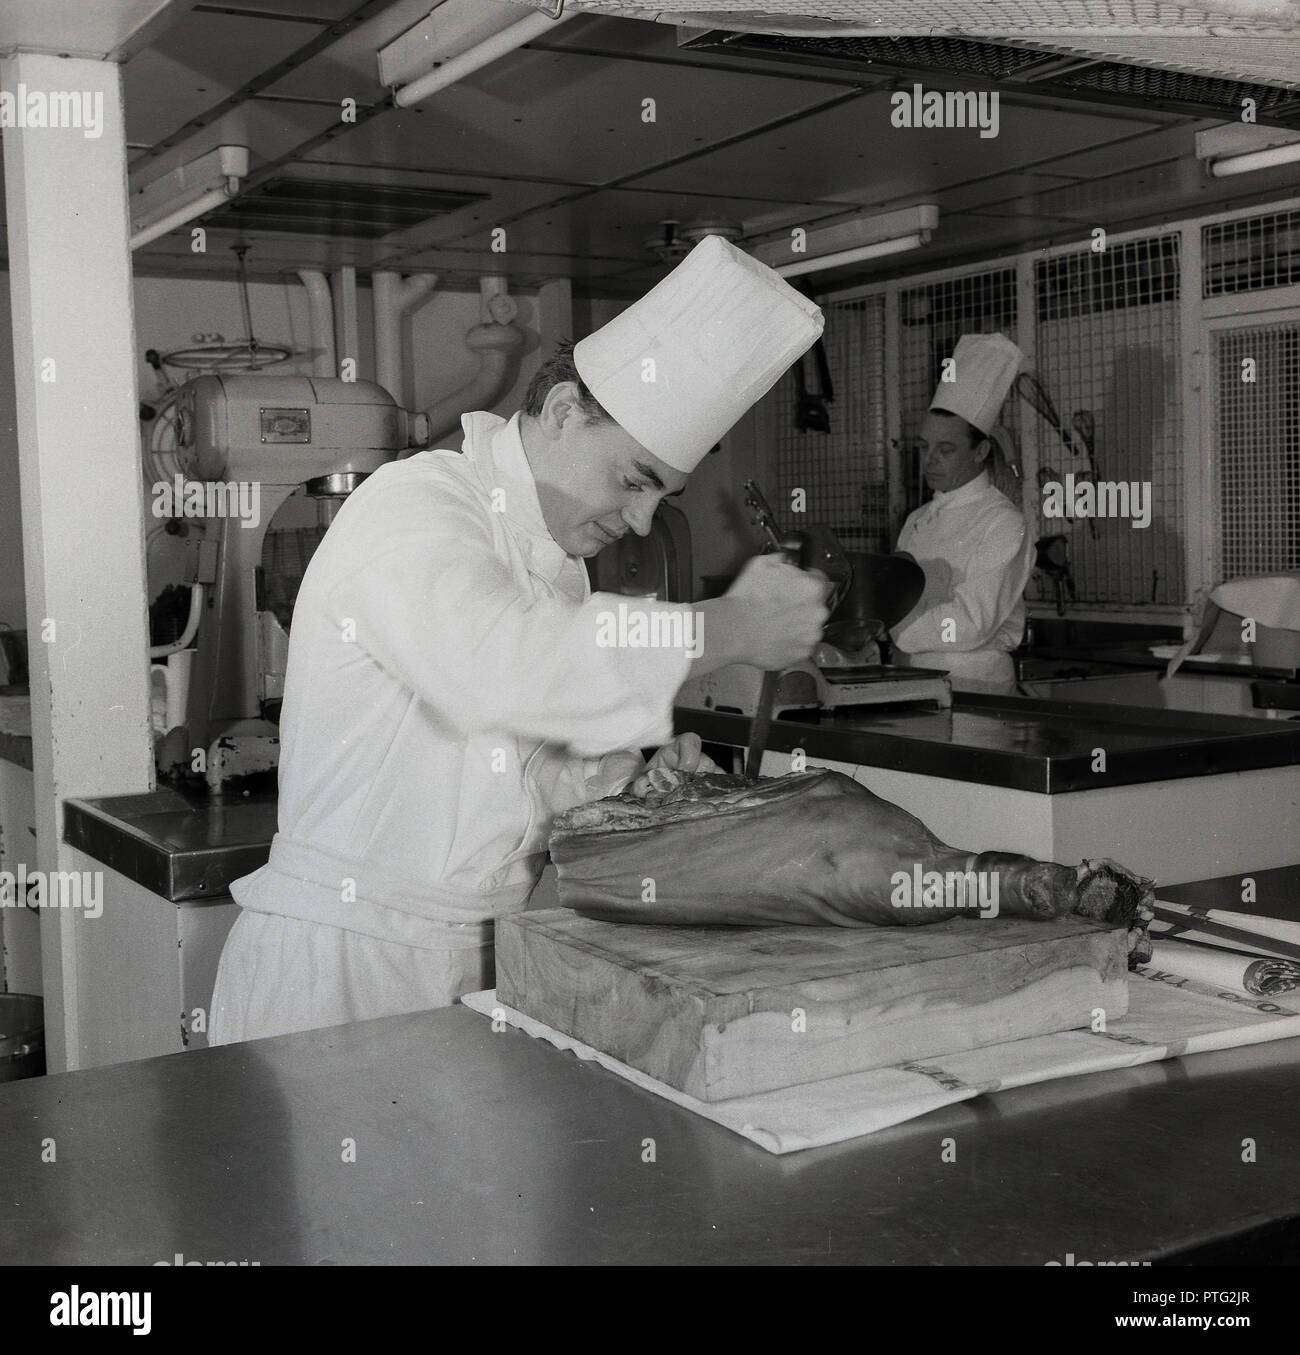 1950, historische, männlichen Chef in Uniform und hohen Hut oder Mütze in die Küche unter Deck an einer Union - Schloss Steamship, Vorbereitung ein Bein von Serrano Schinken oder auf einen Holzblock. Stockfoto